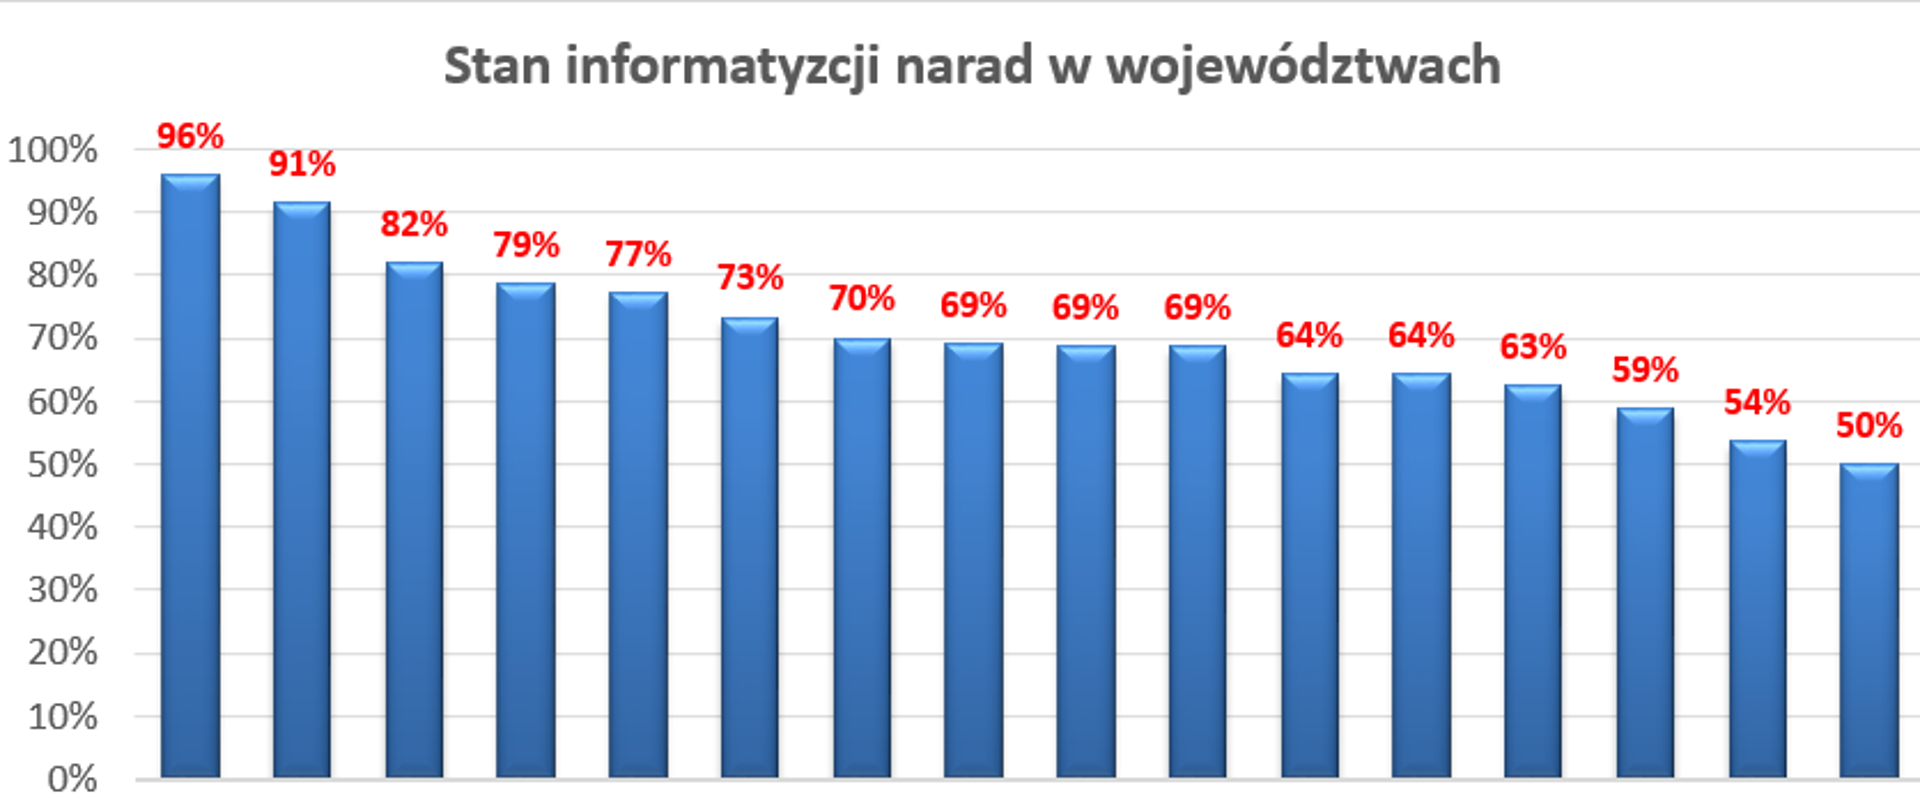 Rysunek 1 przedstawia ranking województw:województwo opolskie 96%, wielkopolskie 91%,podkarpackie 82%,mazowieckie 79%,małopolskie 77%,
dolnośląskie 73%,pomorskie 70%,warmińsko-mazurskie 69%,lubelskie 69%,łódzkie 69%,lubuskie 64%,zachodniopomorskie 64%, śląskie 63%, kujawsko-pomorskie 59%, świętokrzyskie 54%, podlaskie 50%.